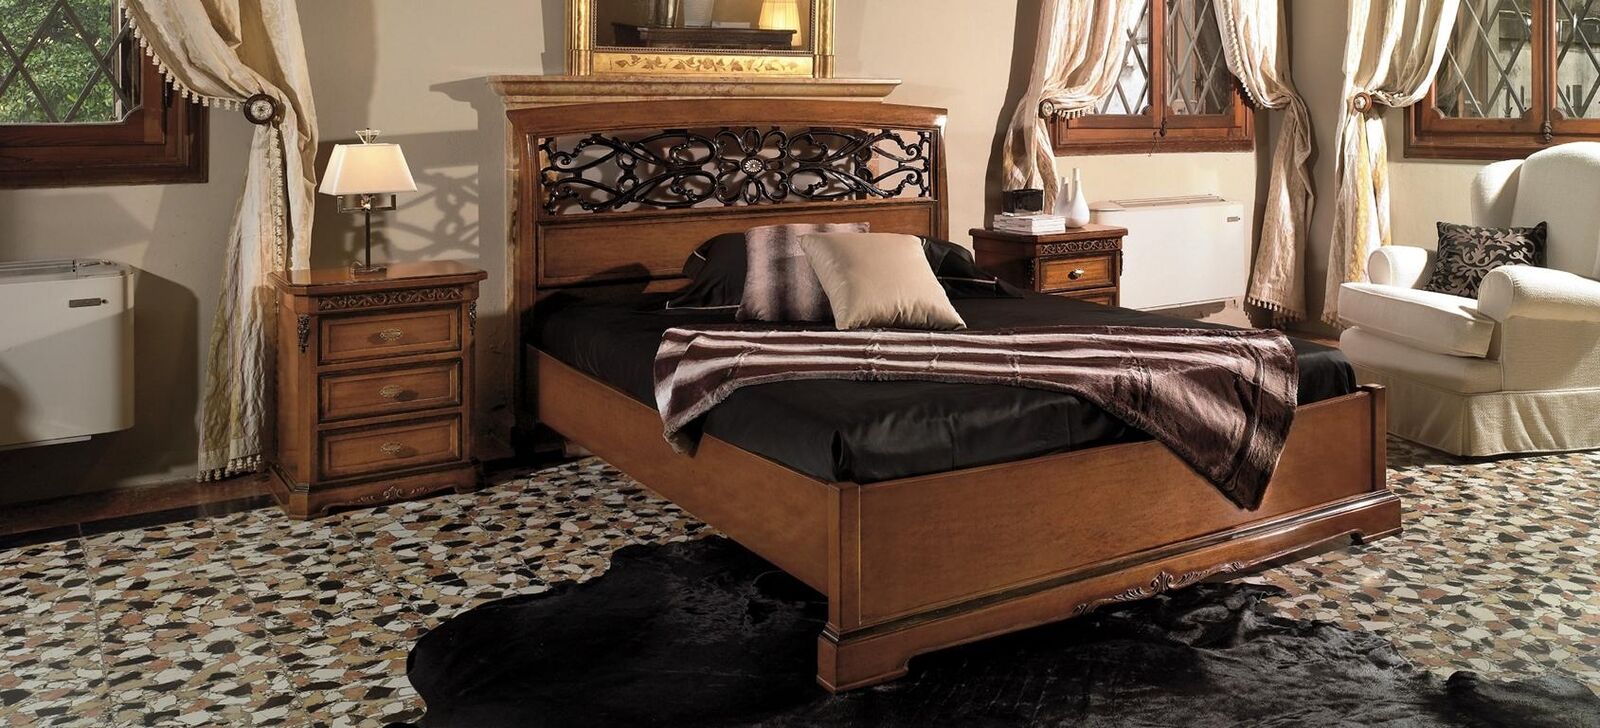 Holz Doppelbett Betten Massivholz Schlafzimmer Möbel Vaccari cav giovanni Bett